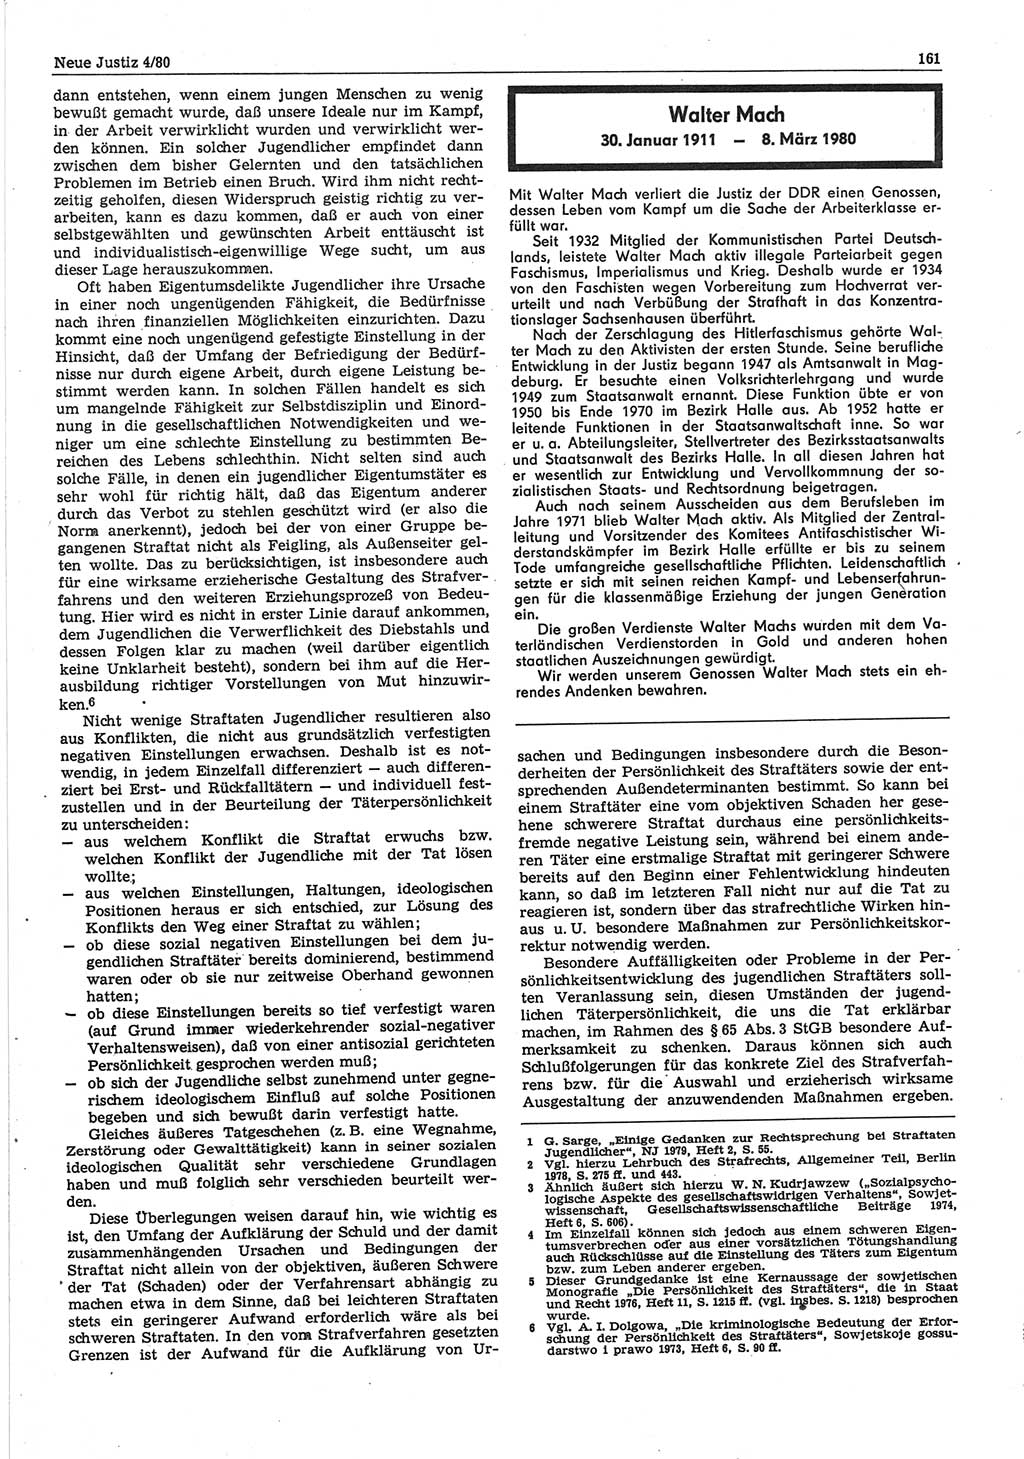 Neue Justiz (NJ), Zeitschrift für sozialistisches Recht und Gesetzlichkeit [Deutsche Demokratische Republik (DDR)], 34. Jahrgang 1980, Seite 161 (NJ DDR 1980, S. 161)